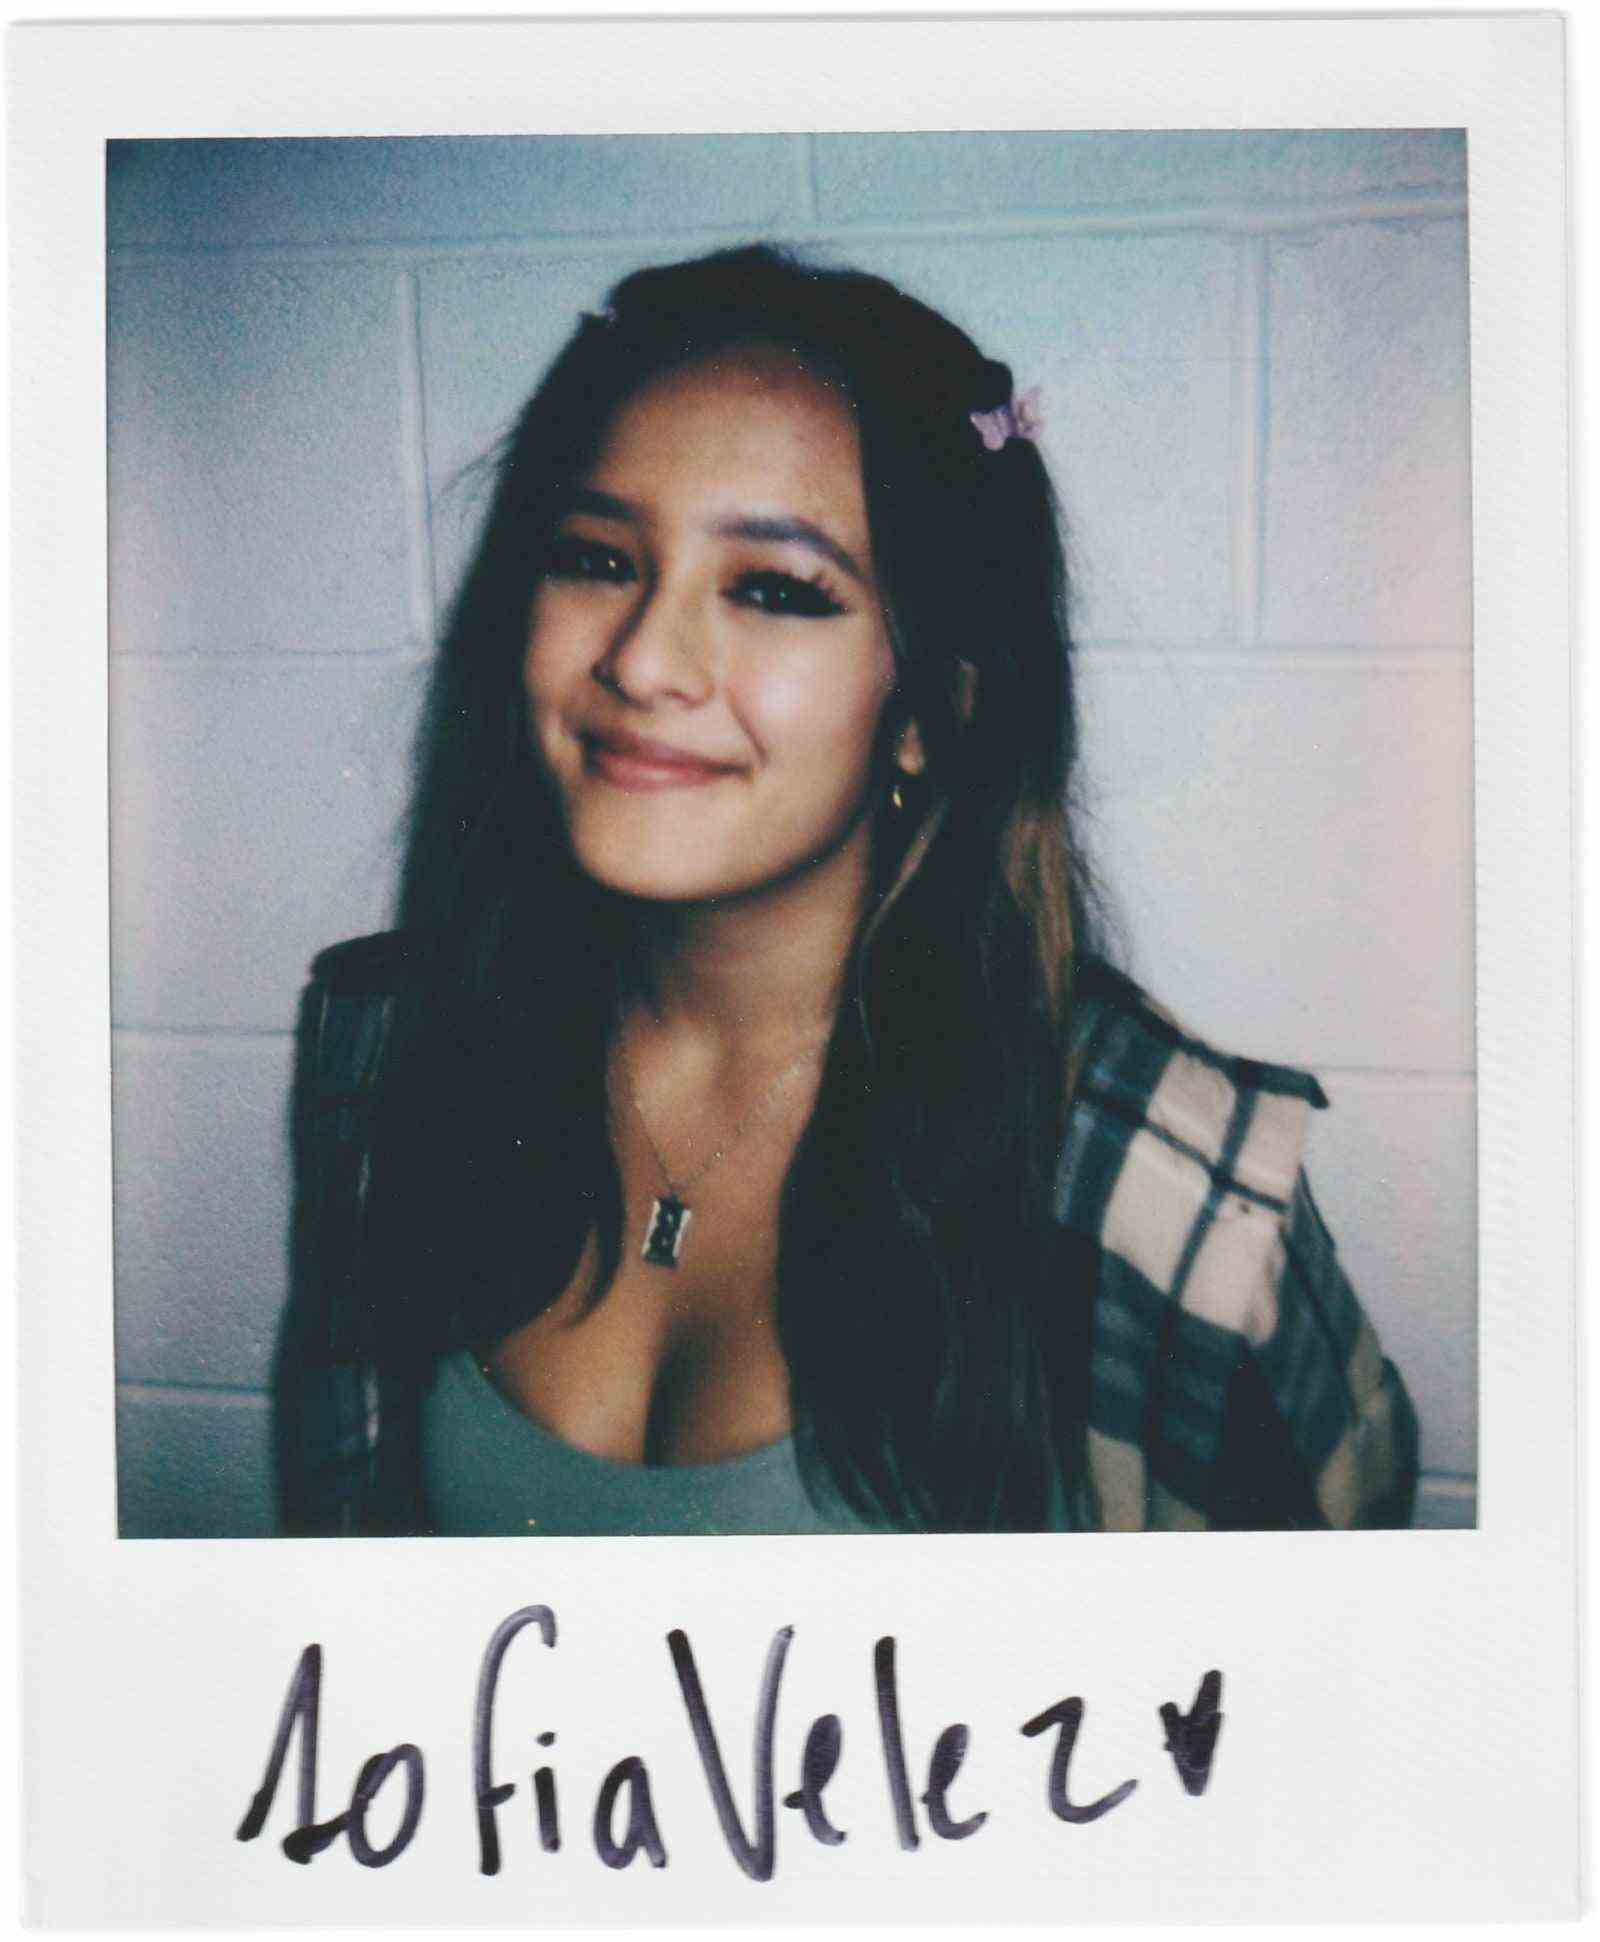 Polaroidporträt von Sofia Velez von der Dunellen High School